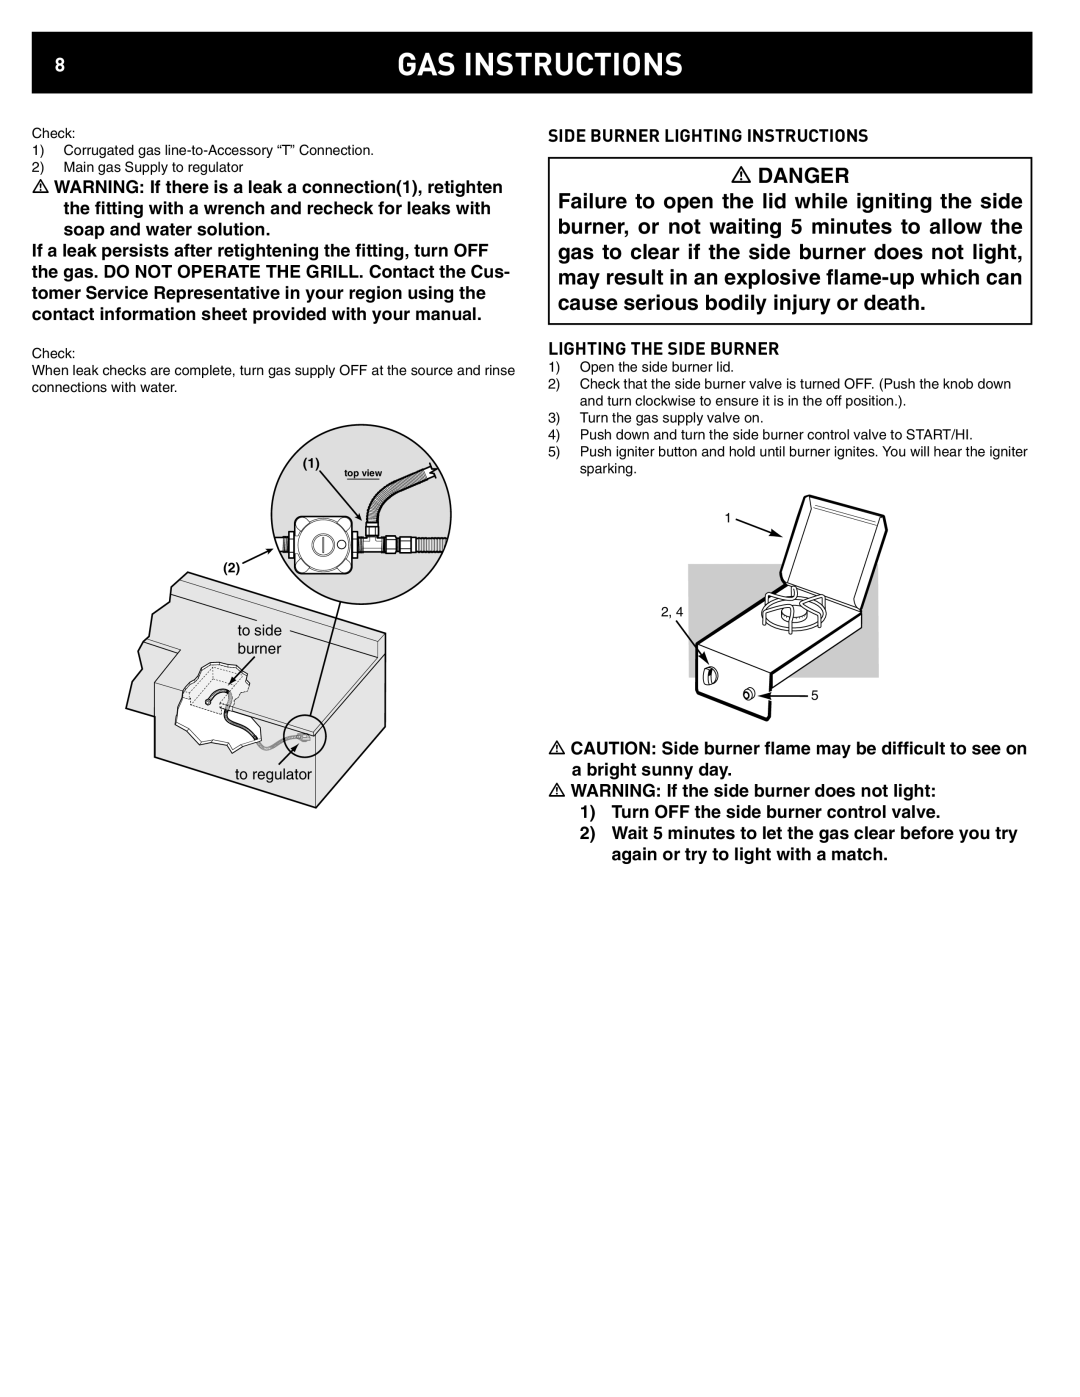 Weber 42377, Summit Built-In NG Side Burner manual Gas Instructions, Danger 